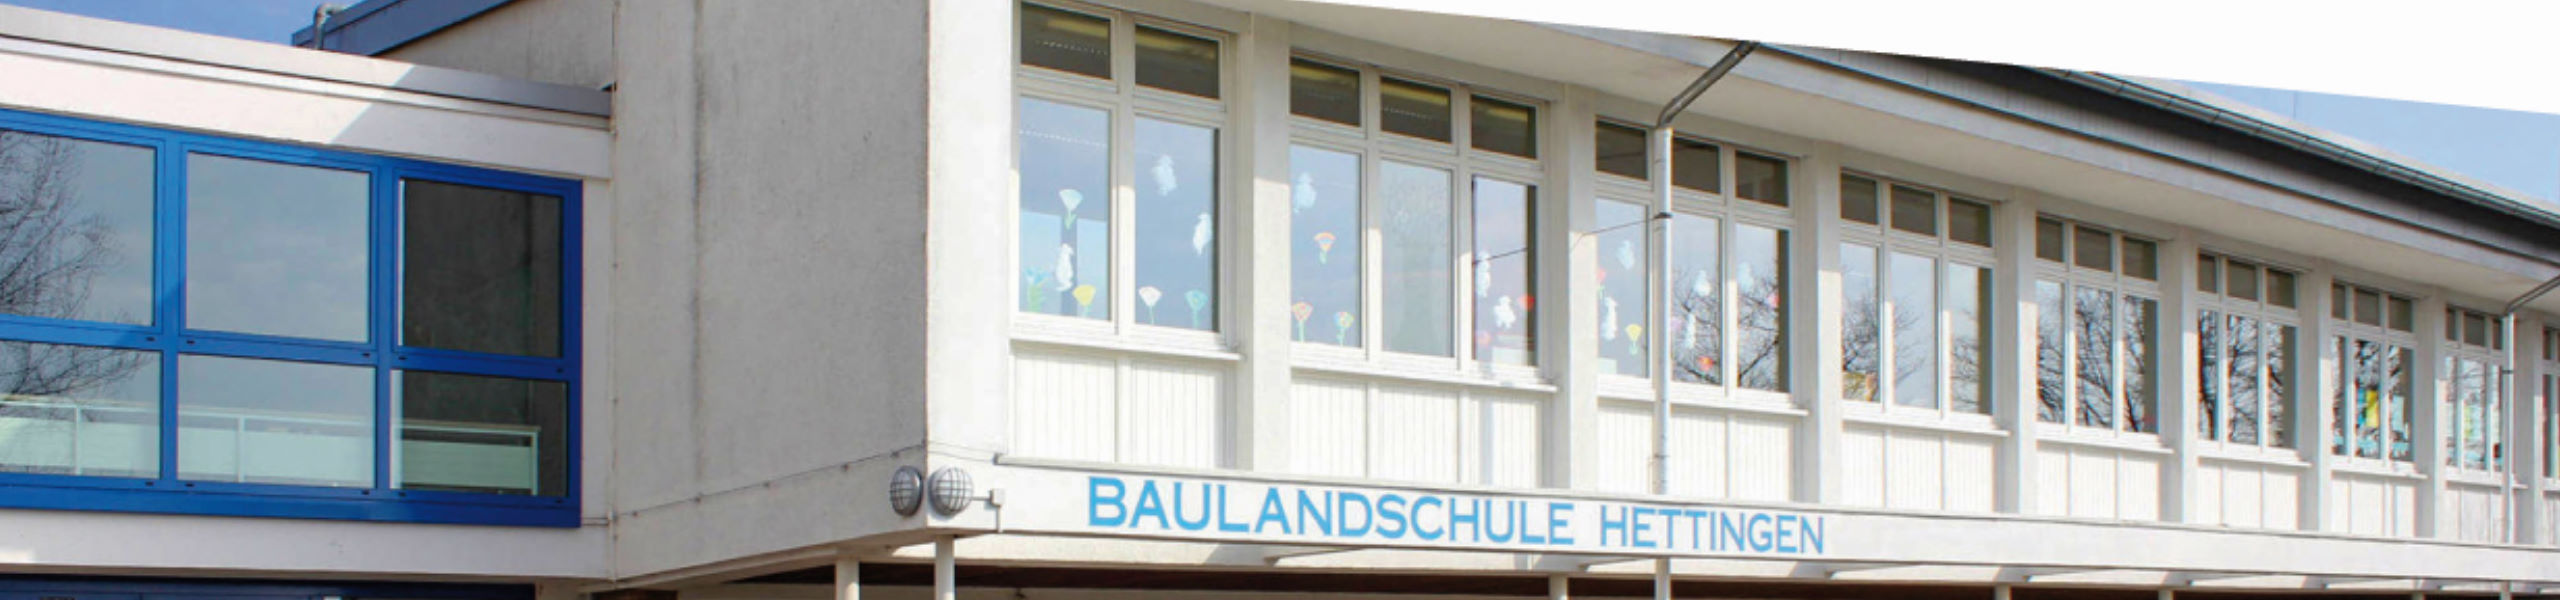 Baulandschule Hettingen - Hauptschule / Werkrealschule